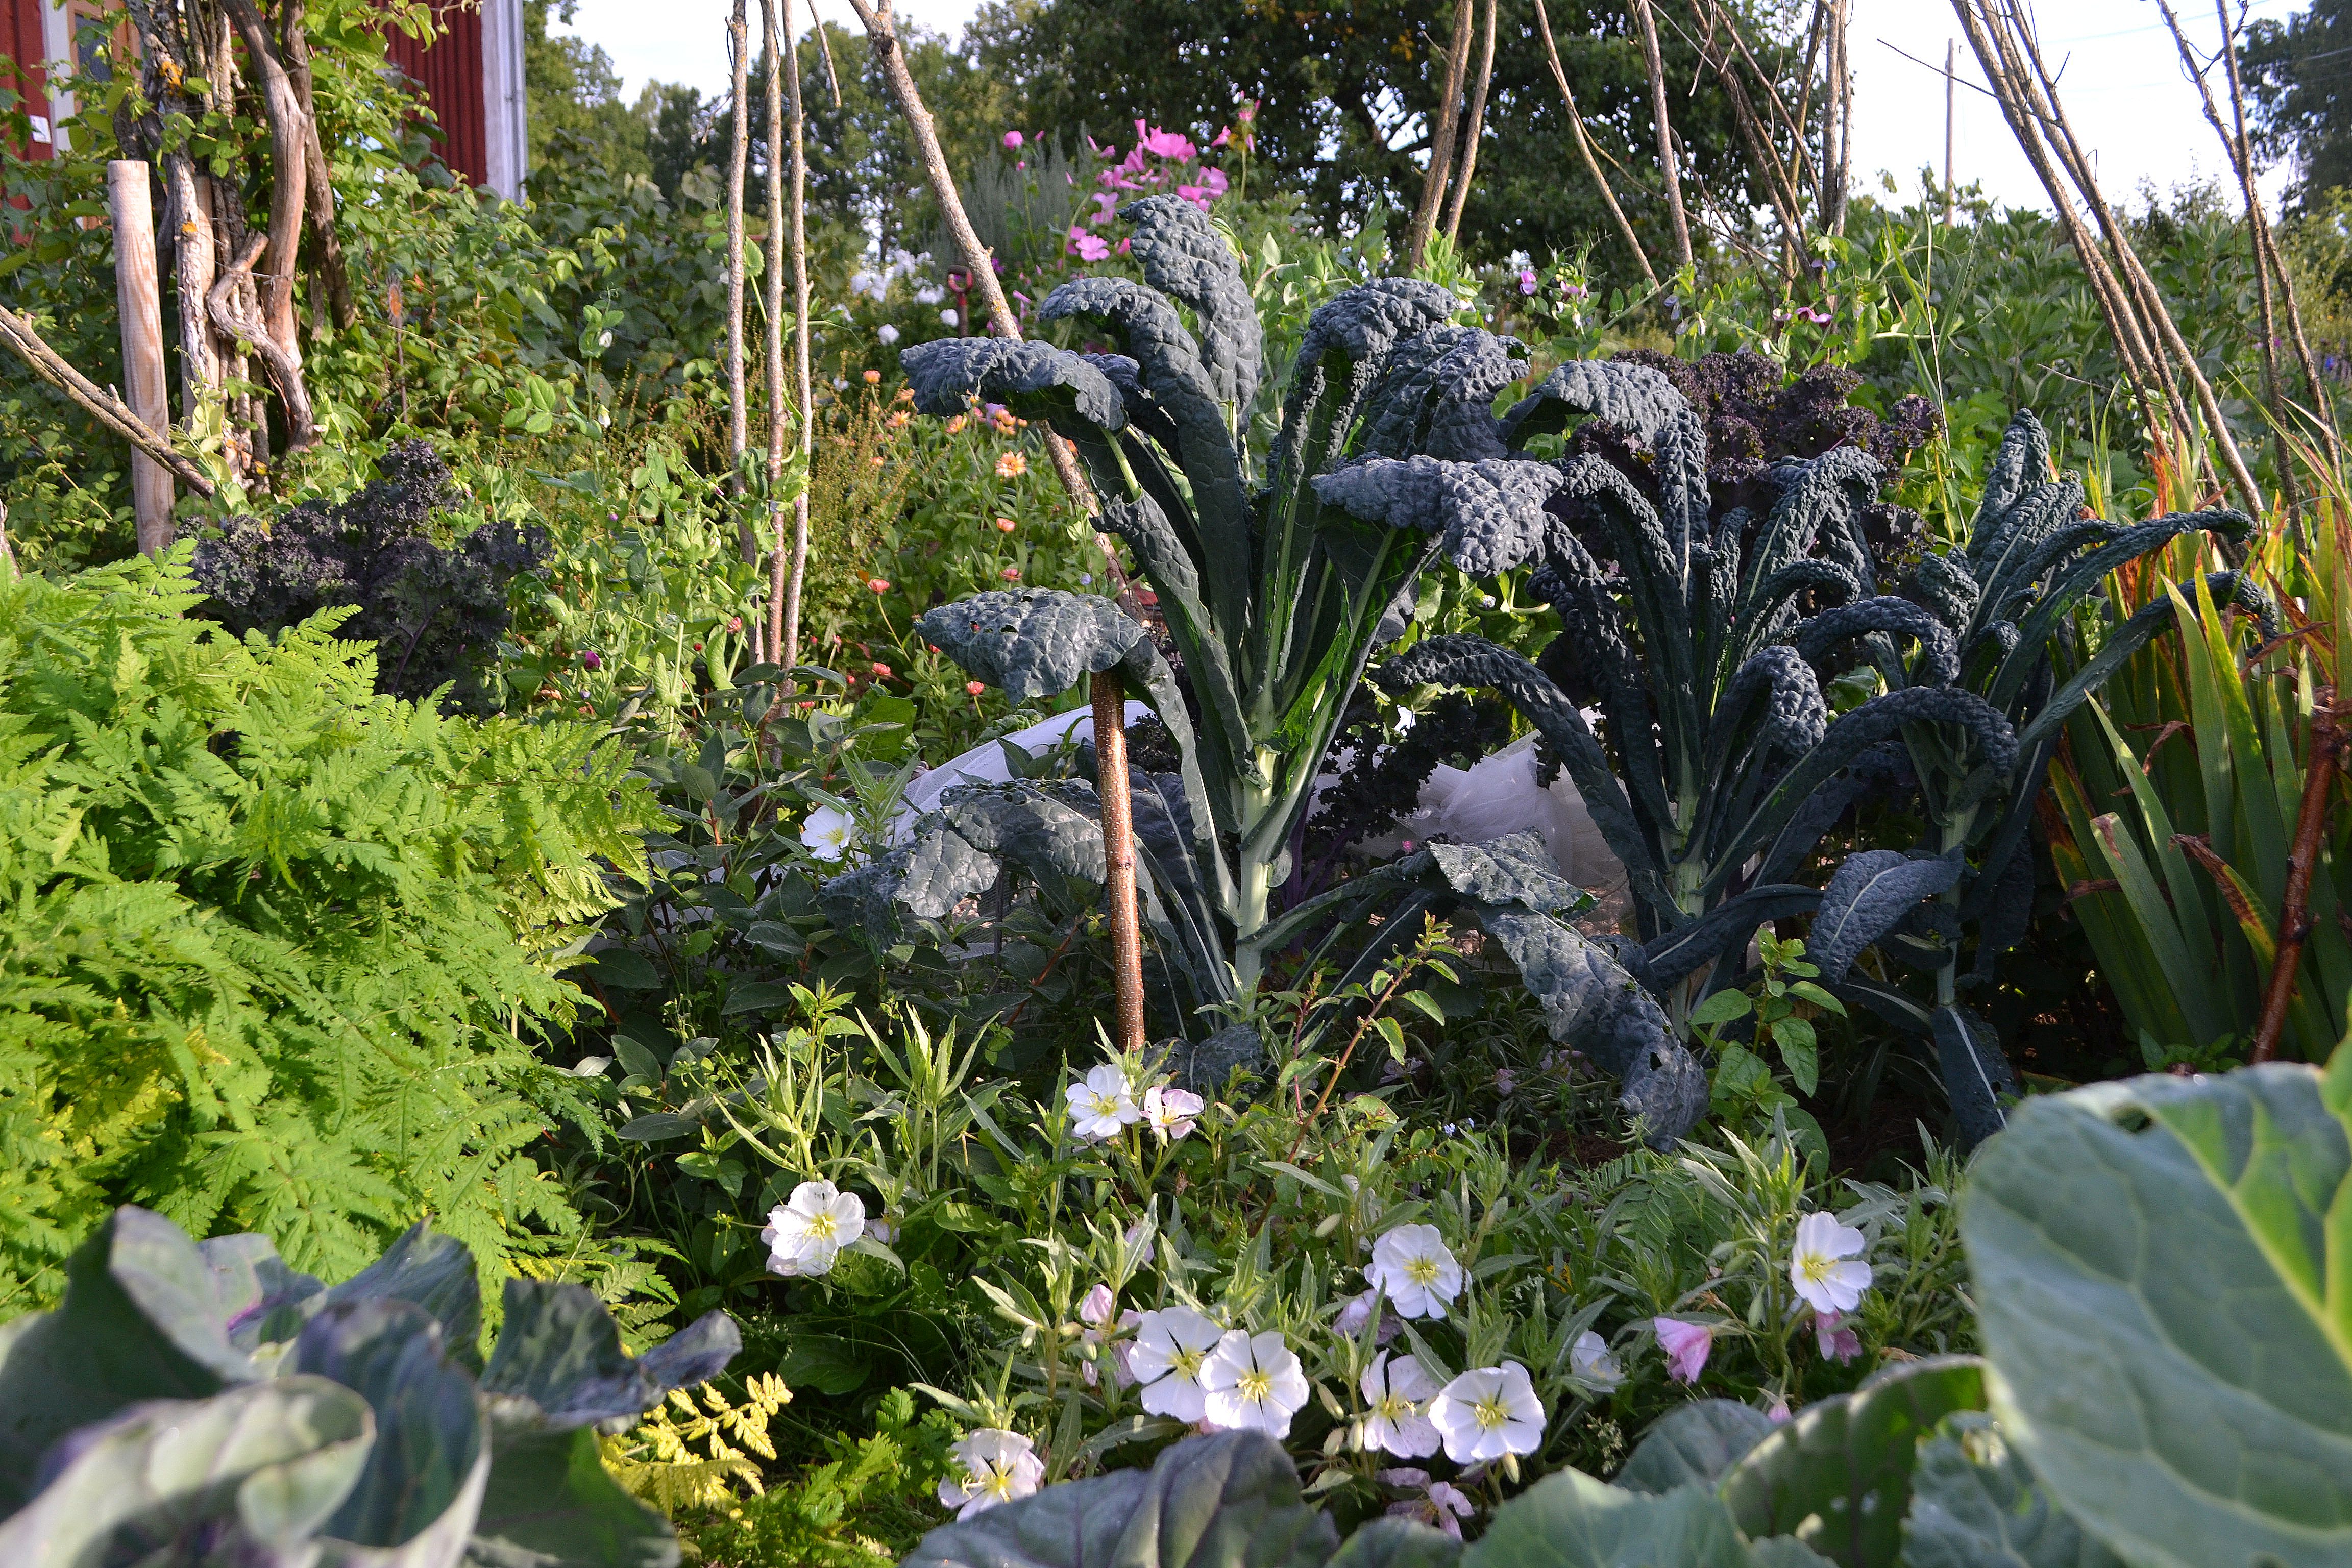 En köksträdgård med många blandade växter, bland annat en hög svartkål. Gardening tips. Kitchen garden with a mix of vegetables, like black kale.